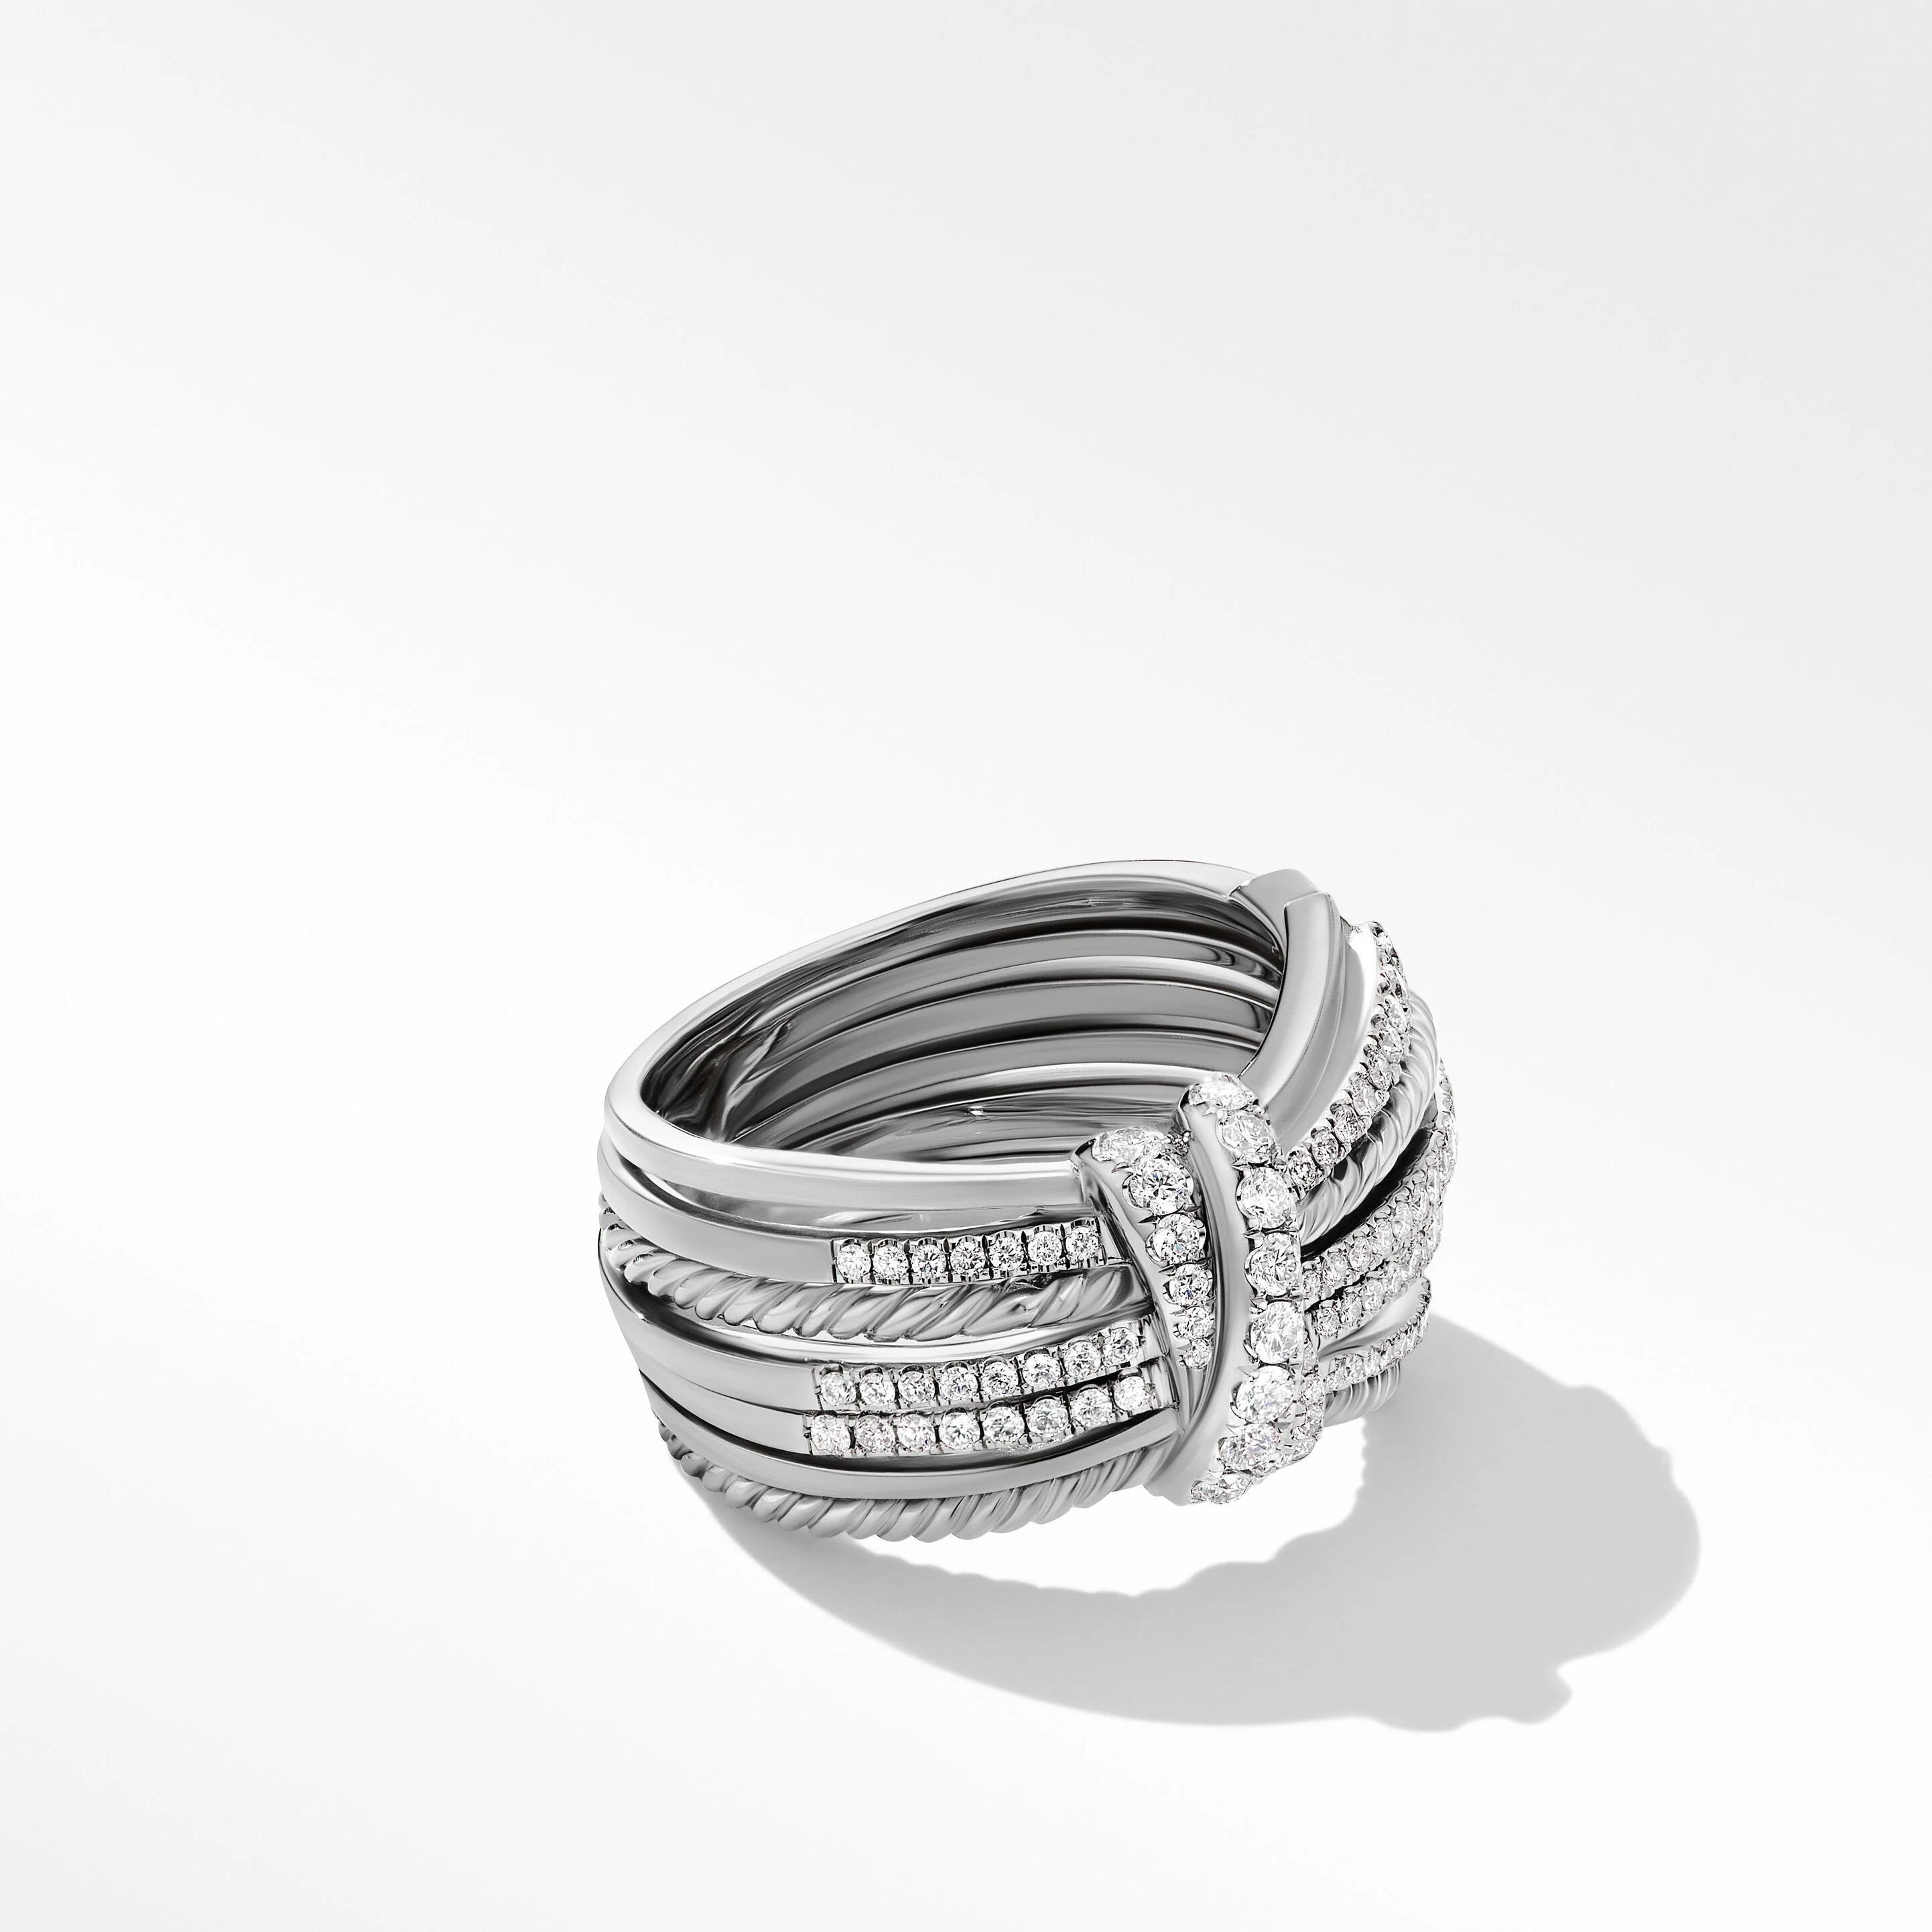 Angelika™ Ring with Pavé Diamonds | David Yurman